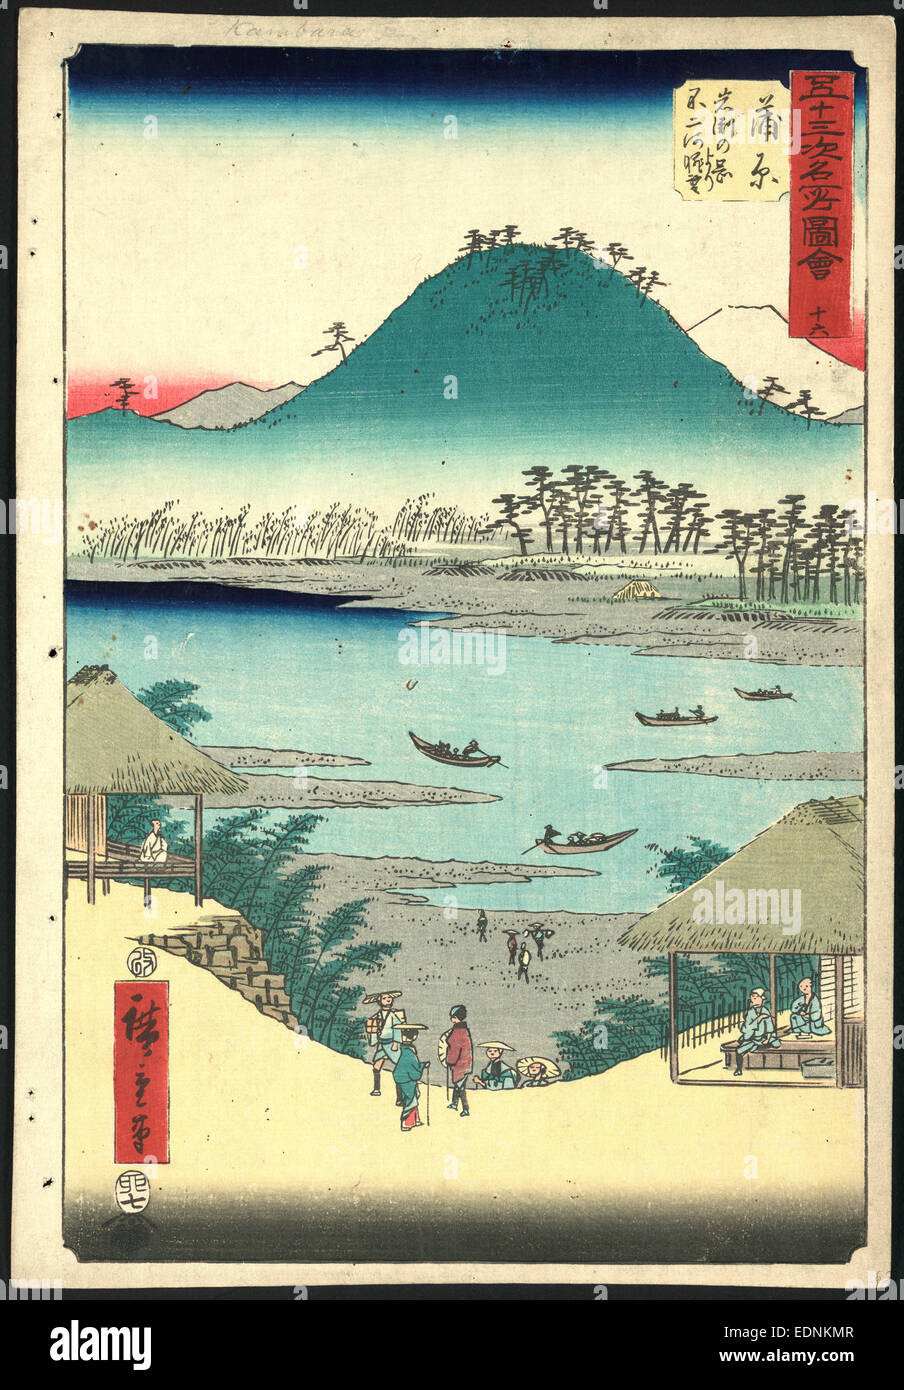 KANBARA, Ando Hiroshige, 1797-1858, Künstler, [ca. 1855], 1 Druck: Holzschnitt, Farbe; 36 x 24,7 cm., Print zeigt Kanbara, der 16. Station auf der Tokaido-Straße, aus der Vogelperspektive mit Pilgern zu Fuß eine Steigung zwischen zwei Gebäuden, kann man ein Teehaus. In der Ferne sind Boote an einem Fluss und darüber hinaus, die Berge, darunter Mount Fuji. Stockfoto